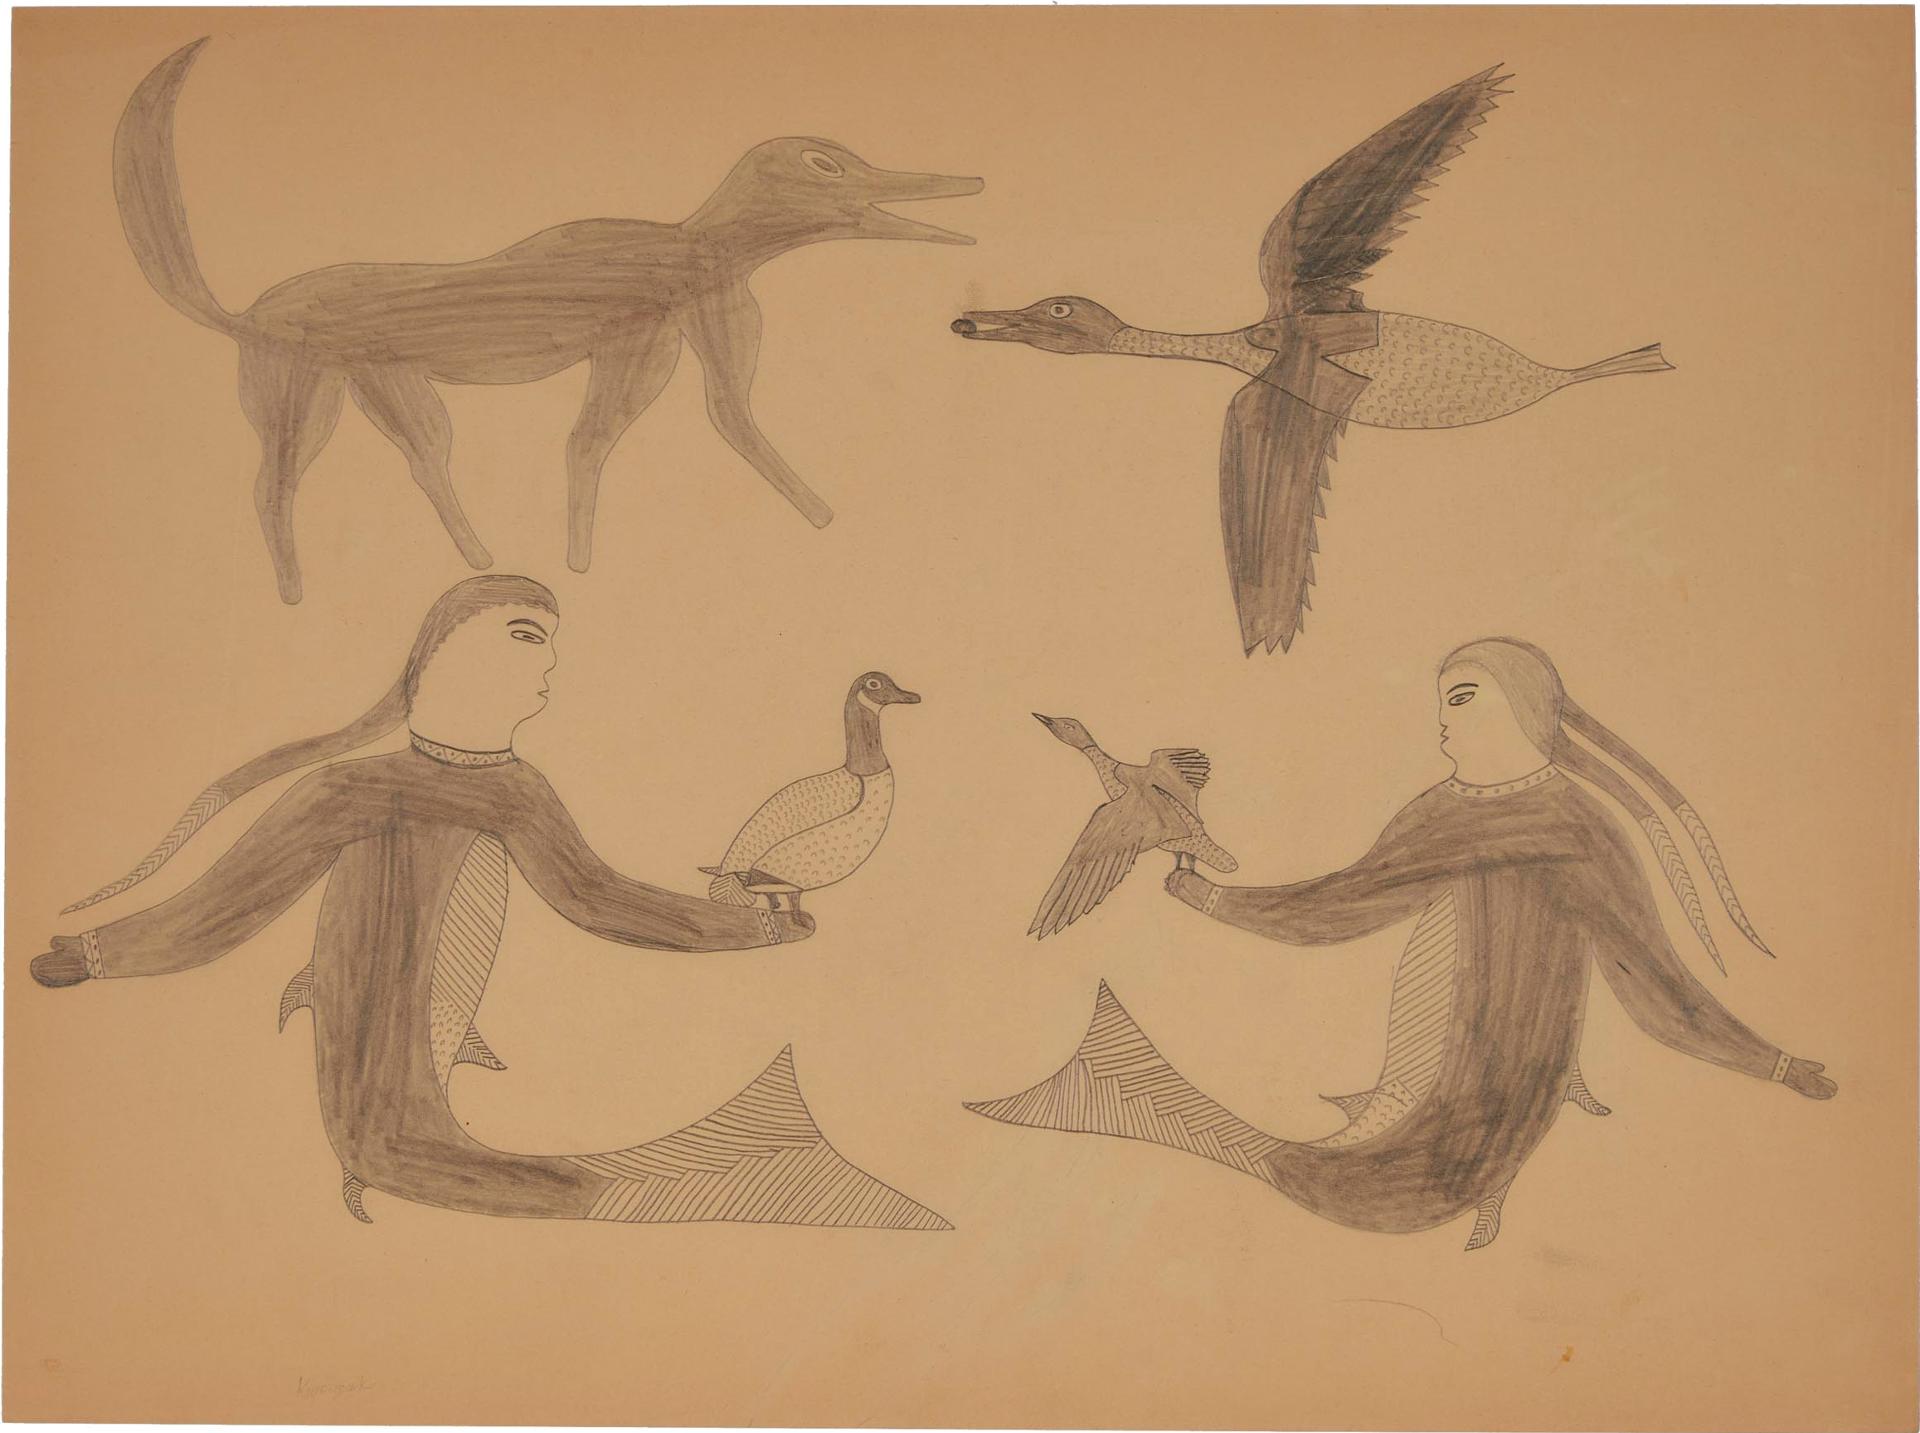 Kenojuak Ashevak (1927-2013) - Untitled (Composition Of Figures)